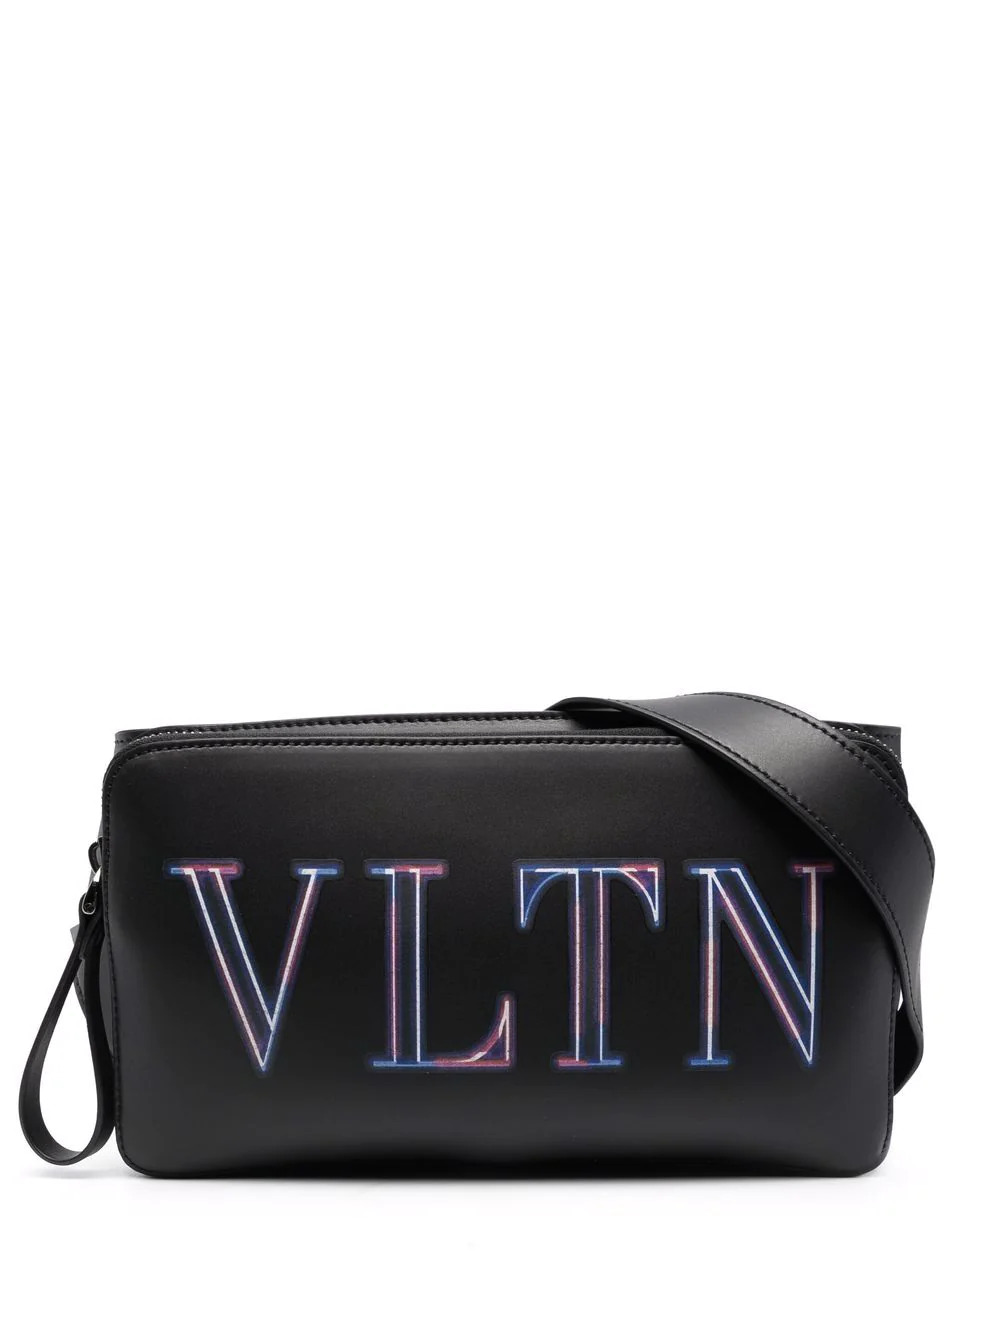 VLTN neon belt bag